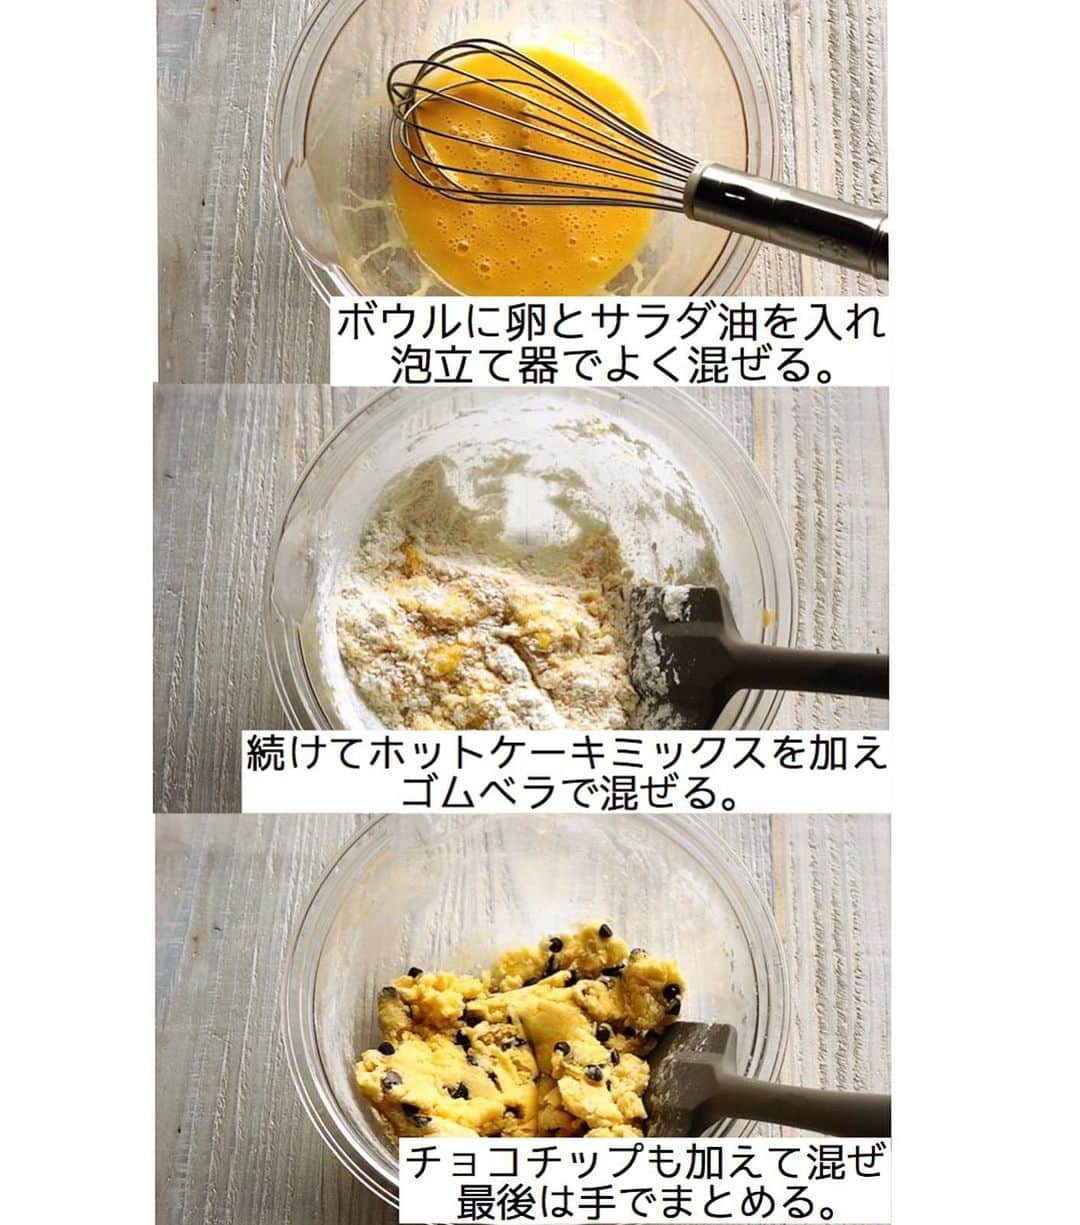 Mizuki【料理ブロガー・簡単レシピ】さんのインスタグラム写真 - (Mizuki【料理ブロガー・簡単レシピ】Instagram)「・﻿ 【#レシピ 】ーーーーーーーーーー﻿ ♡世界一簡単なホケミクッキー♡﻿ ーーーーーーーーーーーーーーーー﻿ ﻿ ﻿ ﻿ おはようございます(*^^*)﻿ ﻿ 今日ご紹介させていただくのは﻿ \ 世界一簡単なホケミクッキー /﻿ ﻿ 少ない材料&単純な手順で﻿ ちゃんとサクサクに仕上がりますよ♩﻿ もちろん型も必要なく﻿ 思い立ったらすぐに作れます！！﻿ ﻿ 今回はチョコチップを加えましたが﻿ 刻んだ板チョコやドライフルーツでも◎﻿ よかったらお試し下さい(*^^*)﻿ ﻿ 《お知らせ》﻿ 本日1月24日午後3時20分〜﻿ NHK Eテレ まる得マガジンの﻿ 集中再放送がございます☺️﻿ このホケミクッキーも作りますので﻿ よかったらご覧下さいね✨﻿ ﻿ ﻿ ﻿ ＿＿＿＿＿＿＿＿＿＿＿＿＿＿＿＿＿＿＿＿﻿ 【18個分】﻿ 卵...1個﻿ サラダ油...20g﻿ ホットケーキミックス...150g﻿ チョコチップ(ポイント参照)...30g﻿ ﻿ 1.ボウルに卵とサラダ油を入れ、泡立て器でよく混ぜる。続けてホットケーキミックスを加えてゴムベラで混ぜる。粉っぽさがなくなってきたらチョコチップも加えて更に混ぜ、最後は手でまとめる。﻿ 2.3cm大に丸め、クッキングシートを敷いた天板に並べ、170度に予熱したオーブンで15分焼く。﻿ ￣￣￣￣￣￣￣￣￣￣￣￣￣￣￣￣￣￣￣￣﻿ ﻿ ﻿ ﻿ 《ポイント》﻿ ♦︎チョコチップの代わりに刻んだ板チョコやドライフルーツを入れても♩なにも入れなければ甘さ控え目のクッキーに♩﻿ ﻿ ﻿ ﻿ ﻿ ﻿ ﻿ ﻿ ﻿ 【🔔まる得マガジン集中放送決定🔔】﻿ ￣￣￣￣￣￣￣￣￣￣￣￣￣￣￣￣￣￣﻿ NHK Eテレで放送された﻿ ''ホットケーキミックスで﻿ 絶品おやつ&意外なランチ''の﻿ 集中再放送が決定⭐️﻿ 放送は《1月24日(日)午後3時20分〜》﻿ 8本分一挙に放送されます✨﻿ ﻿ ホットケーキミックスの魅力を﻿ 存分にお伝えさせていただきますので﻿ お時間が合えばご覧下さいませ💕﻿ ￣￣￣￣￣￣￣￣￣￣￣￣￣￣￣￣﻿ ﻿ ﻿ ﻿ ﻿ ﻿ ⭐️発売中⭐️﻿ ＿＿＿＿＿＿＿＿＿＿＿＿＿＿＿＿﻿ ホケミレシピの決定版♩﻿ \はじめてでも失敗しない/﻿ 📙#ホットケーキミックスのお菓子 📙﻿ ﻿ NHKまる得マガジンテキスト☆﻿ ホットケーキミックスで﻿ 📗絶品おやつ&意外なランチ📗﻿ ﻿ しんどくない献立、考えました♩﻿ \15分でいただきます/﻿ 📕Mizukiの2品献立 📕﻿ ﻿ 和食をもっとカジュアルに♩﻿ \毎日のごはんがラクになる/﻿ 📘#Mizukiの今どき和食 📘﻿ ﻿ 📕重版しました！📕﻿ ありがとうございます😭﻿ 【ラクしておいしい！#1品晩ごはん 】﻿ ﻿ ﻿ ﻿ ﻿ ﻿ ＿＿＿＿＿＿＿＿＿＿＿＿＿＿＿＿＿＿﻿ レシピを作って下さった際や﻿ レシピ本についてのご投稿には﻿ タグ付け( @mizuki_31cafe )して﻿ お知らせいただけると嬉しいです😊💕﻿ ￣￣￣￣￣￣￣￣￣￣￣￣￣￣￣￣￣￣﻿ ﻿ ﻿ ﻿ ﻿ #ホットケーキミックス#クッキー#バレンタイン#チョコ#Mizuki#簡単レシピ#時短レシピ#節約レシピ#料理#フーディーテーブル#マカロニメイト#おうちごはん#デリスタグラマー#料理好きな人と繋がりたい#おうちごはんlover#写真好きな人と繋がりたい#foodpic#cooking#recipe#lin_stagrammer#foodporn#yummy#f52grams#世界一簡単なホケミクッキーm」1月24日 9時46分 - mizuki_31cafe